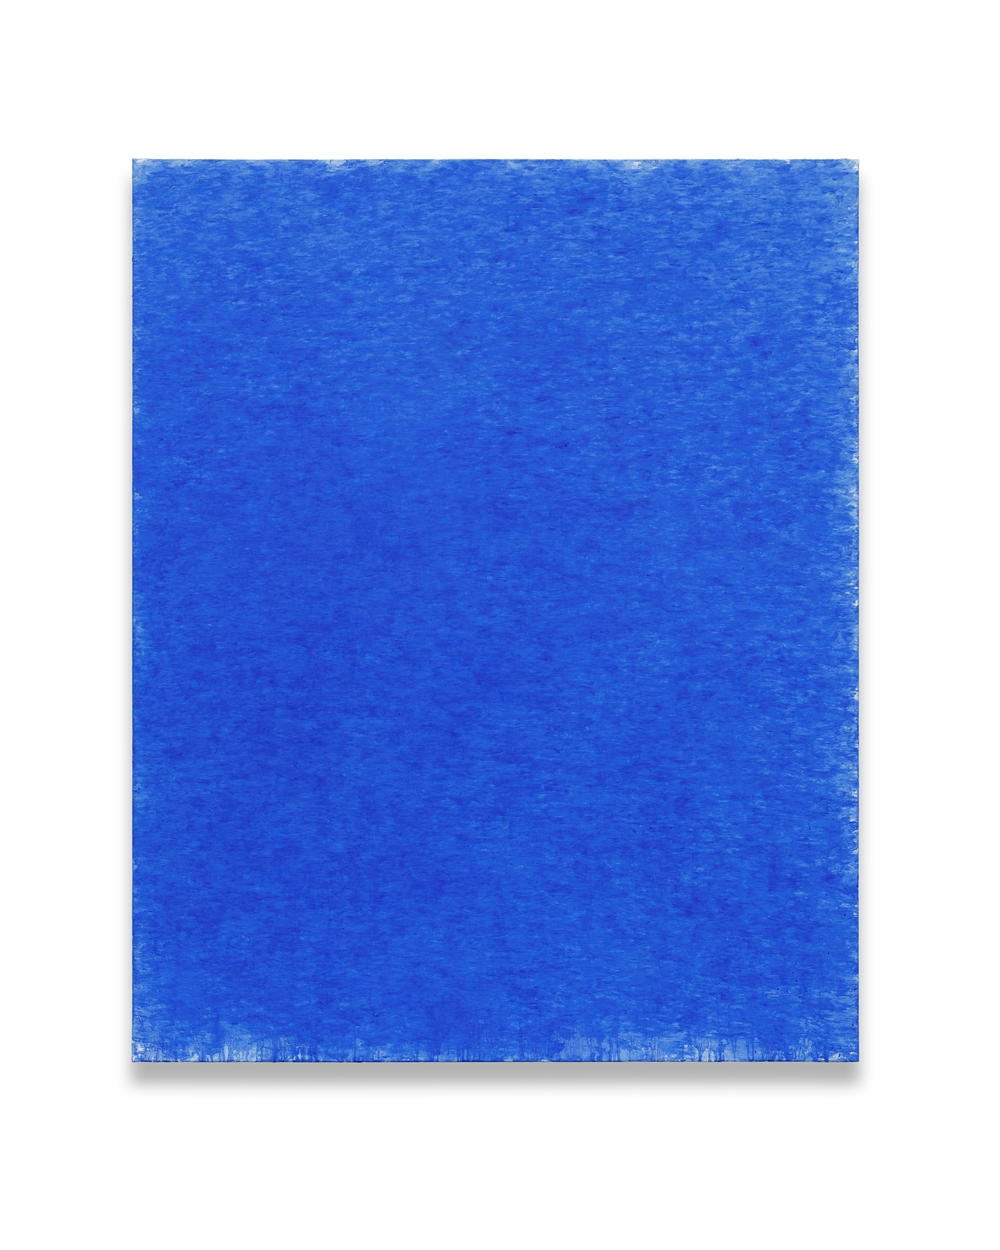 김춘수, ULTRA-MARINE 1949, 162x130.3cm, oil on canvas, 2019